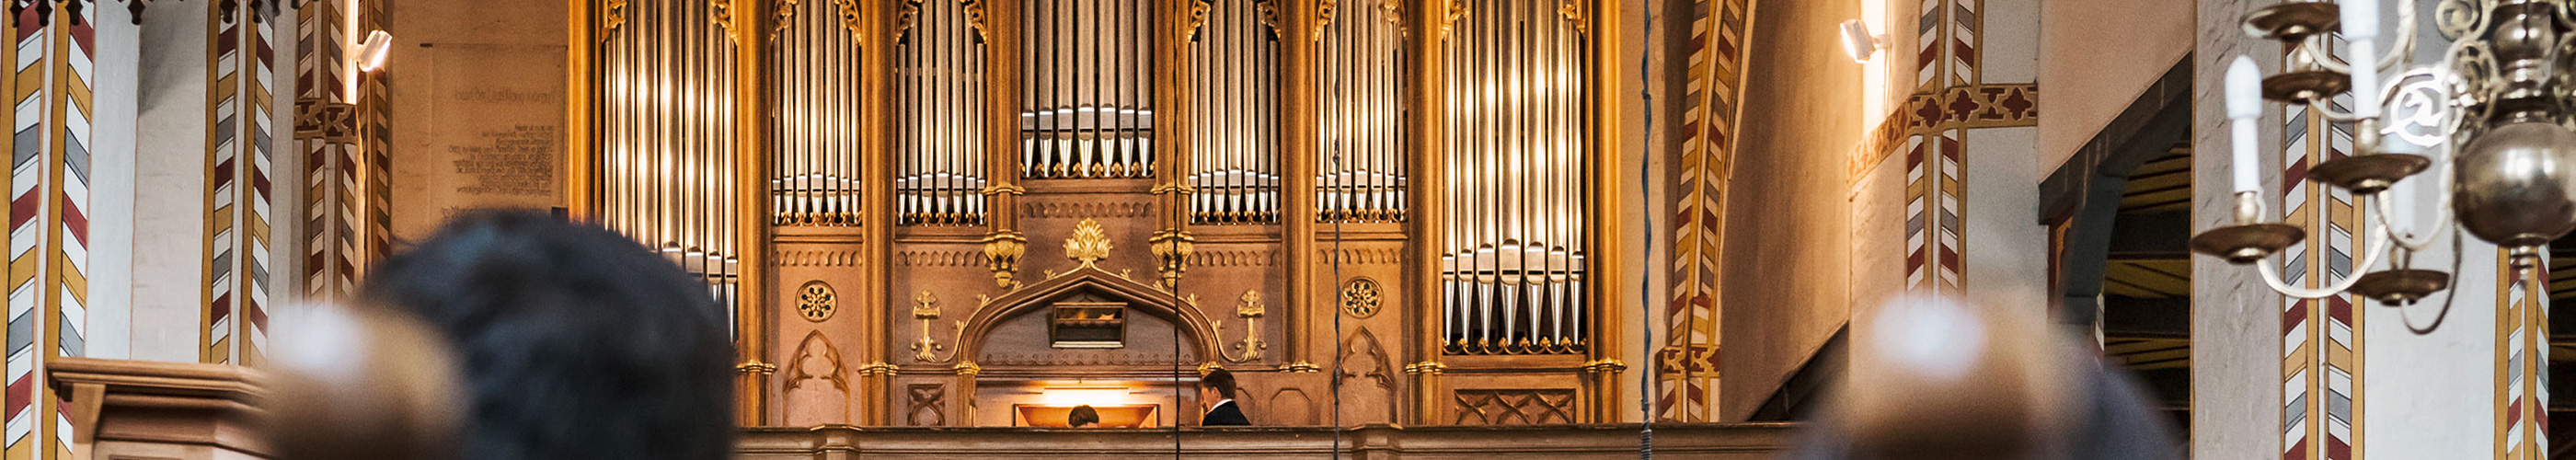 Winzer-Orgel in Schönberg, Foto: Heiko Preller